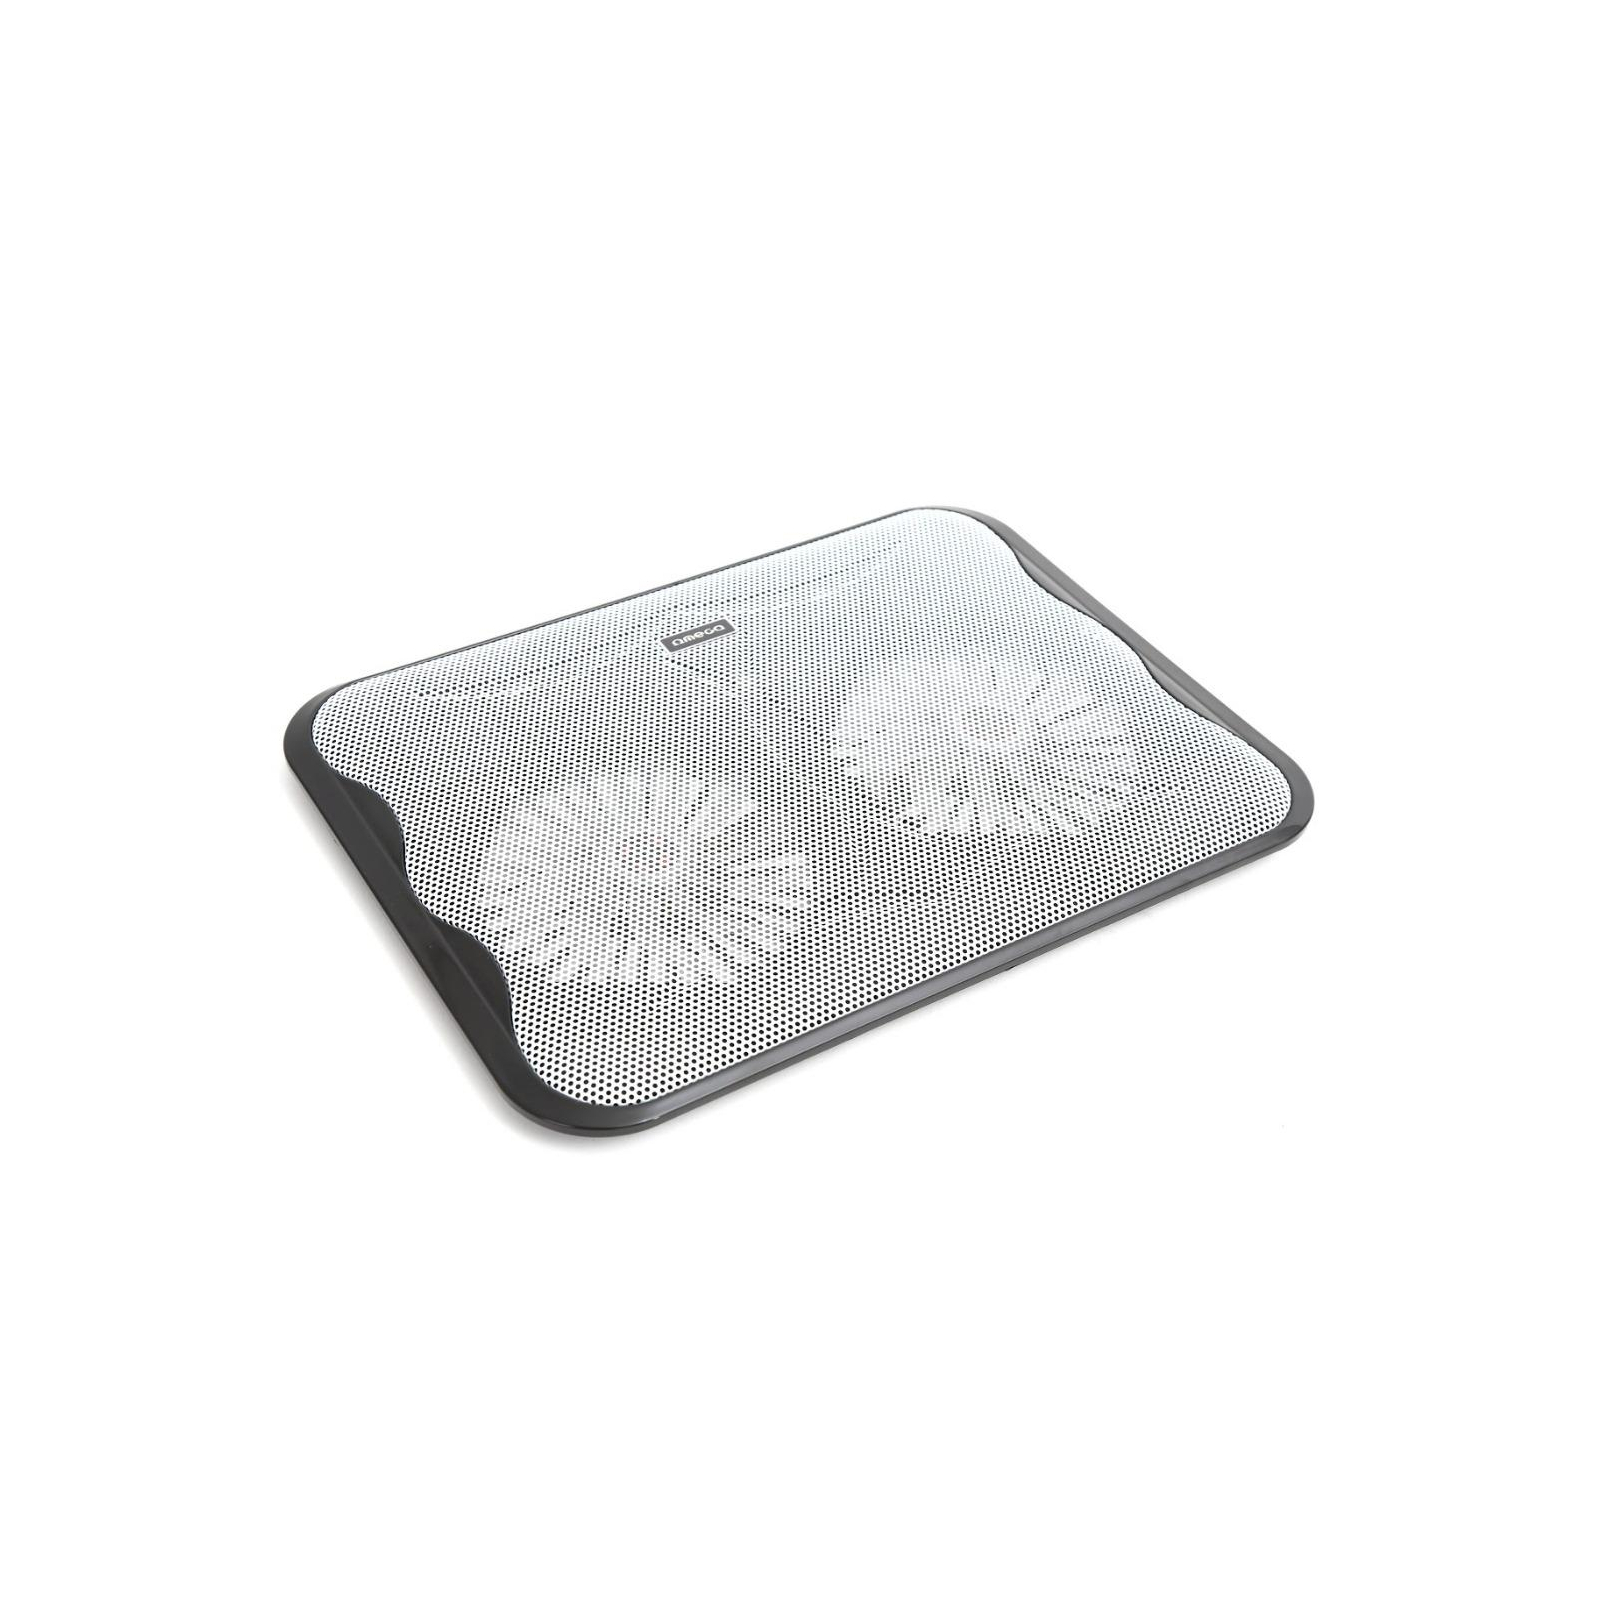 Підставка до ноутбука Omega Laptop Cooler pad "ICE CUBE" 14cm fan USB port black (OMNCPC)